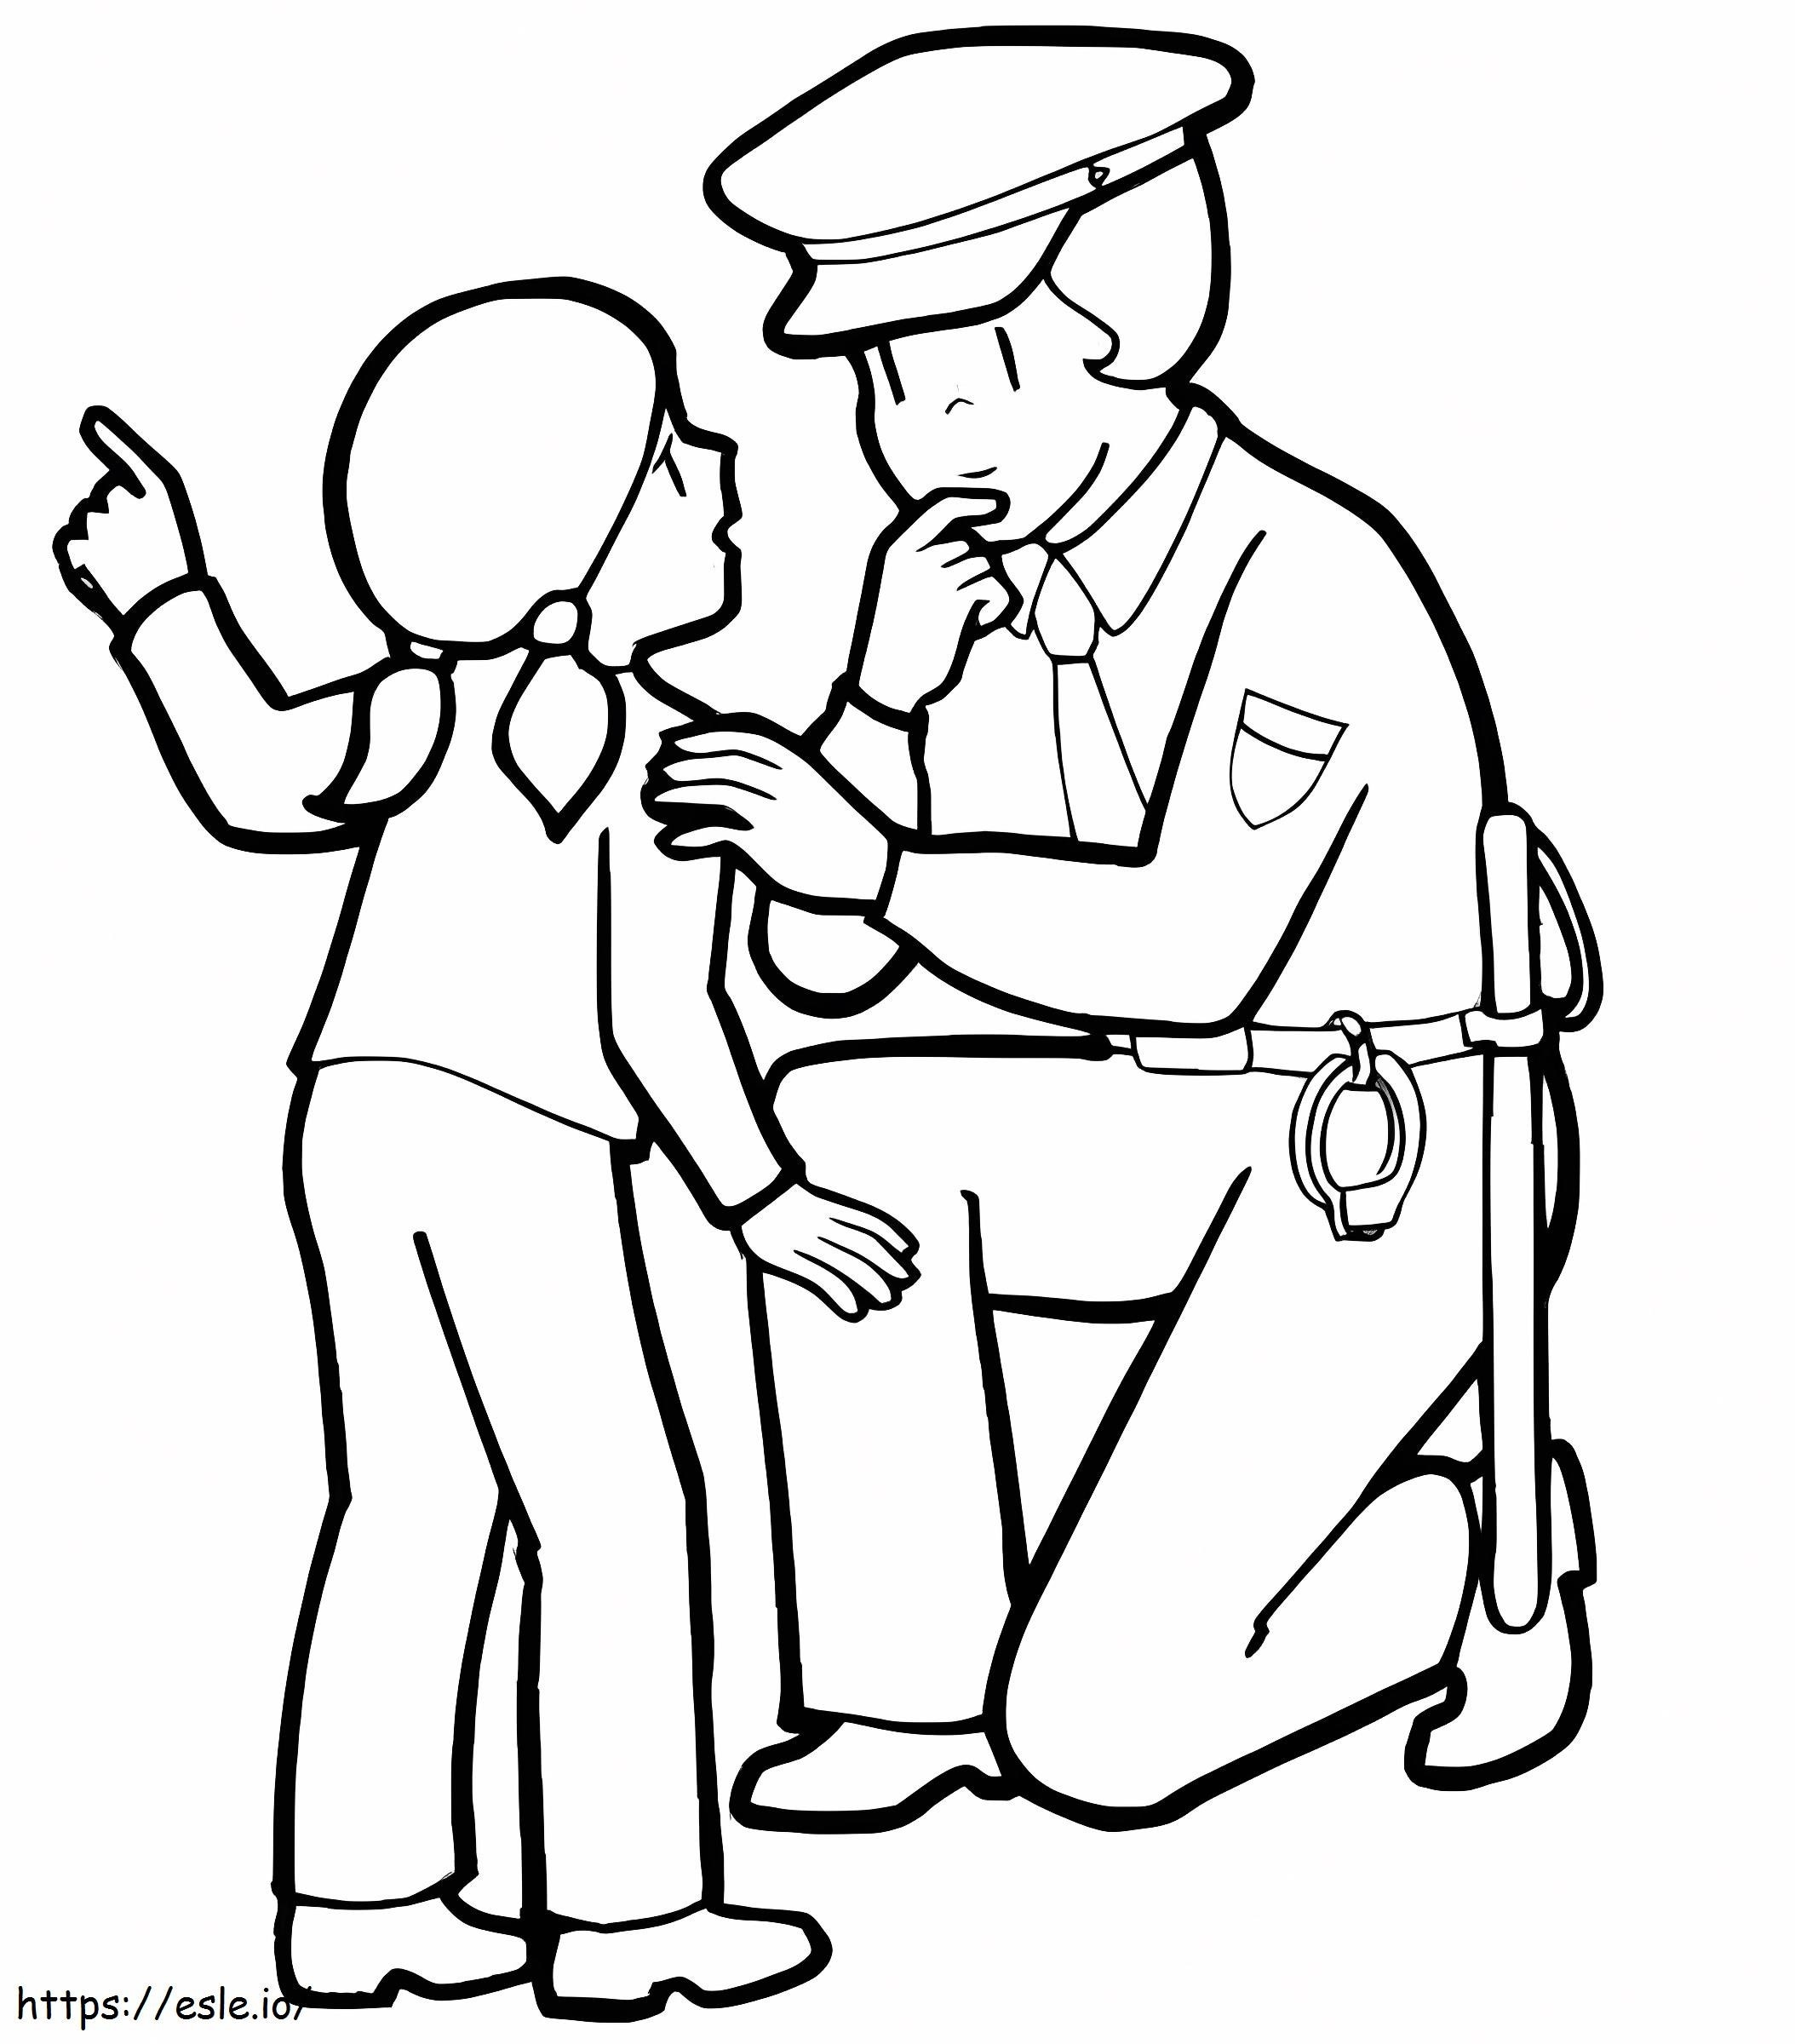 Polícia e garota para colorir